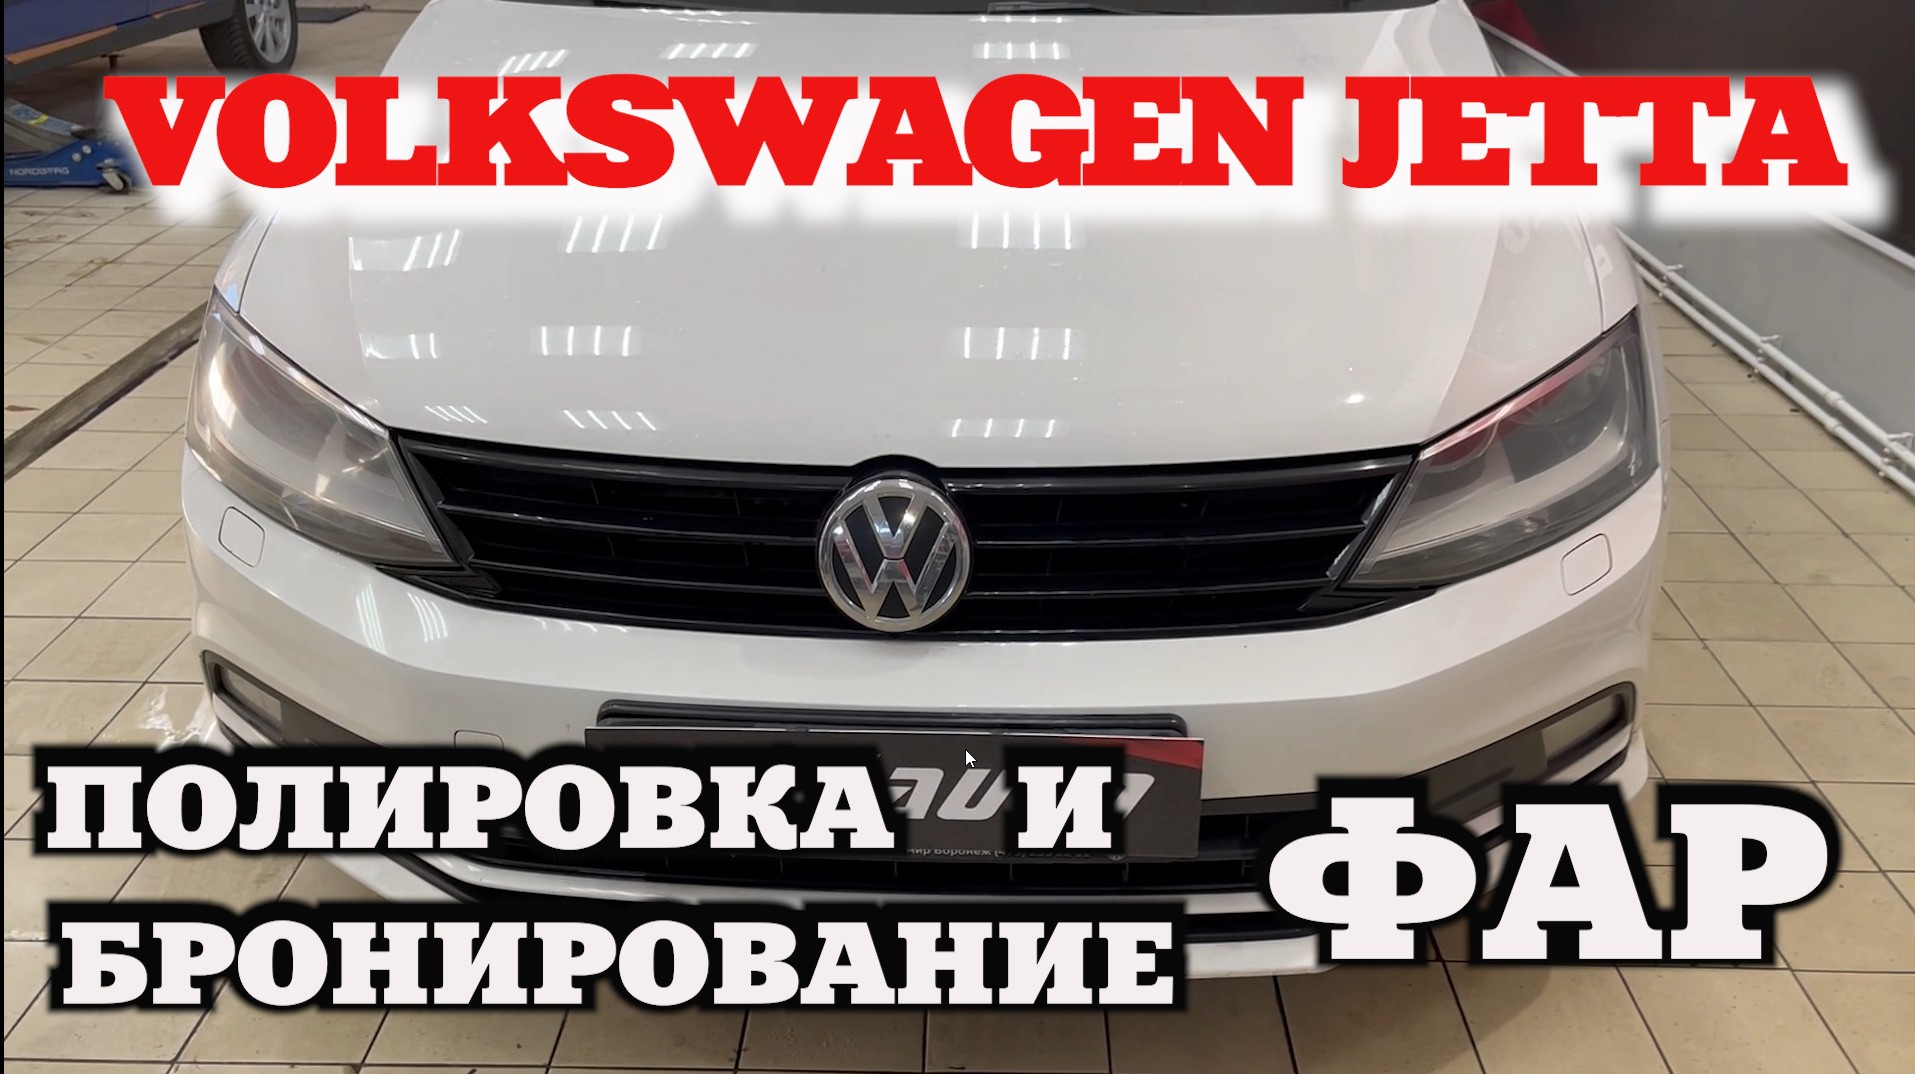 Volkswagen Jetta полировка и бронирование фар